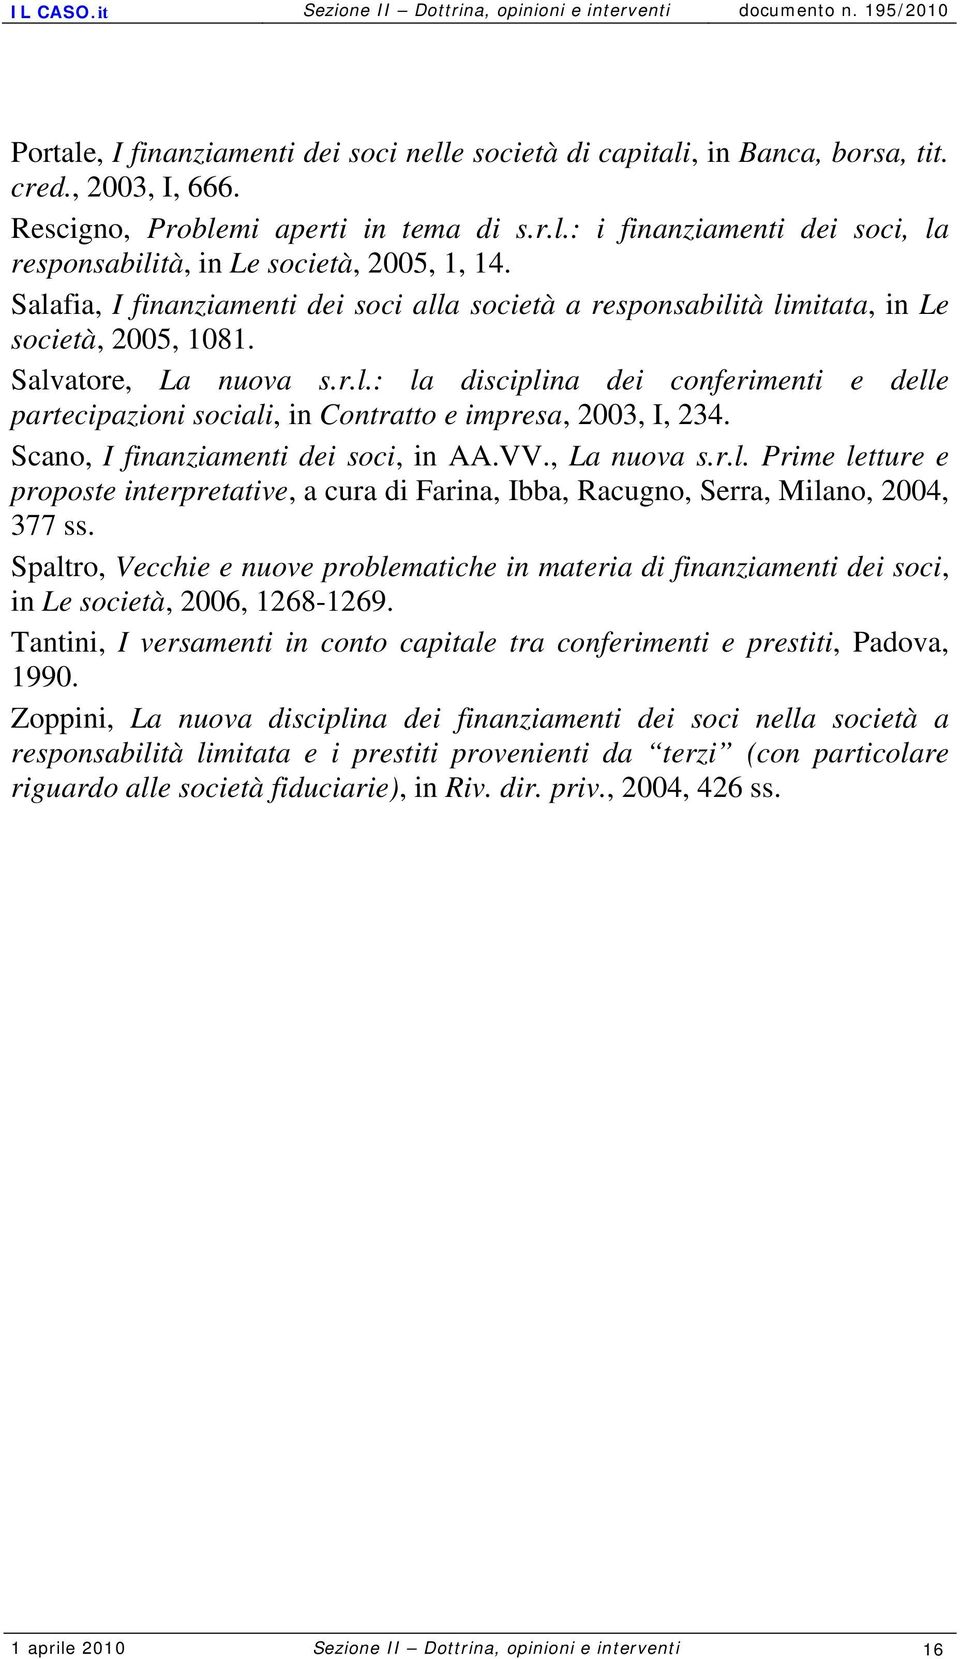 Scano, I finanziamenti dei soci, in AA.VV., La nuova s.r.l. Prime letture e proposte interpretative, a cura di Farina, Ibba, Racugno, Serra, Milano, 2004, 377 ss.